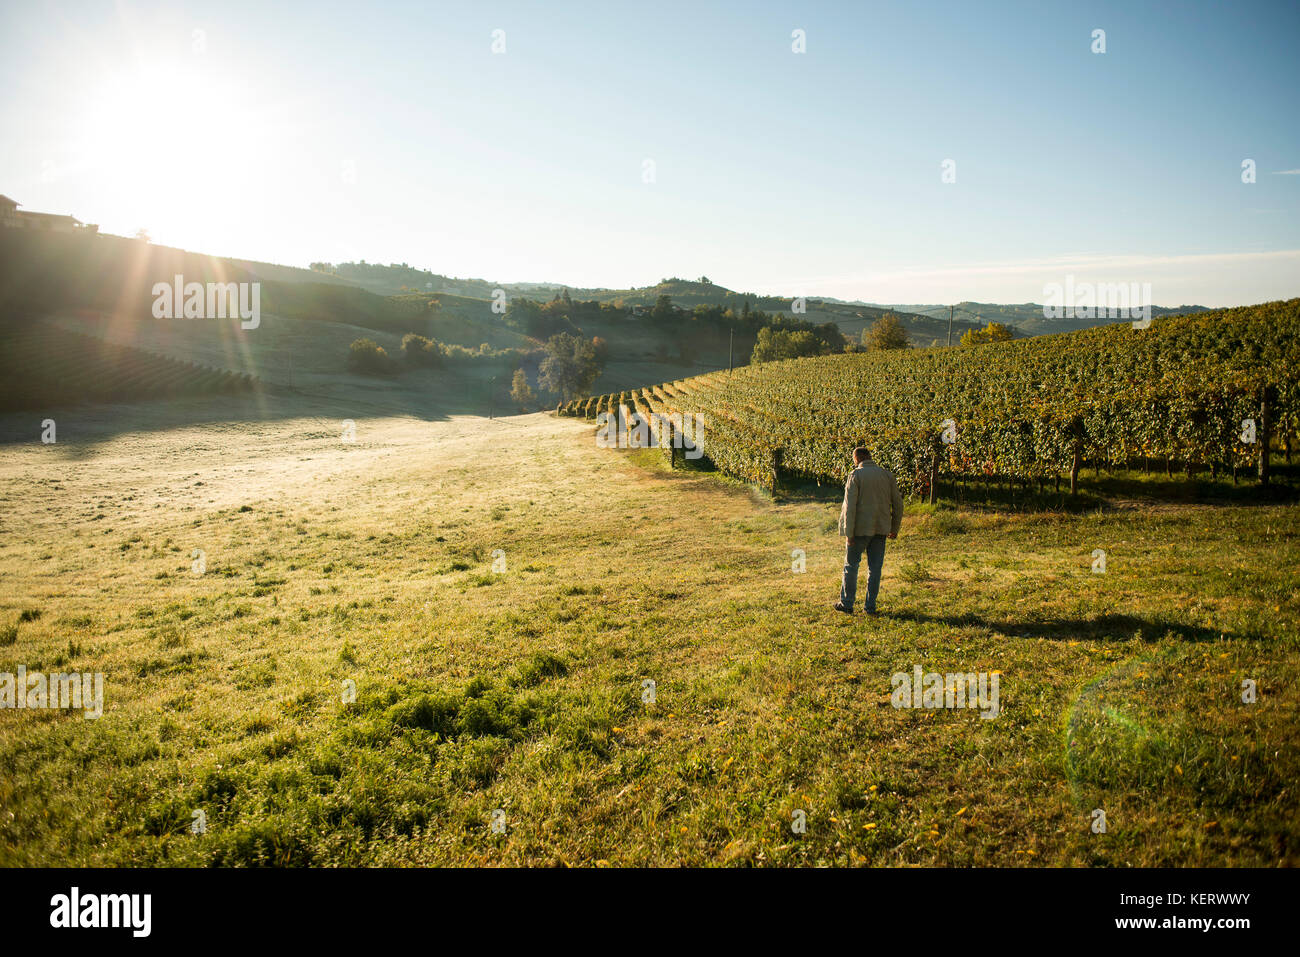 Man Walking Through Vineyard Field at Sunrise Stock Photo